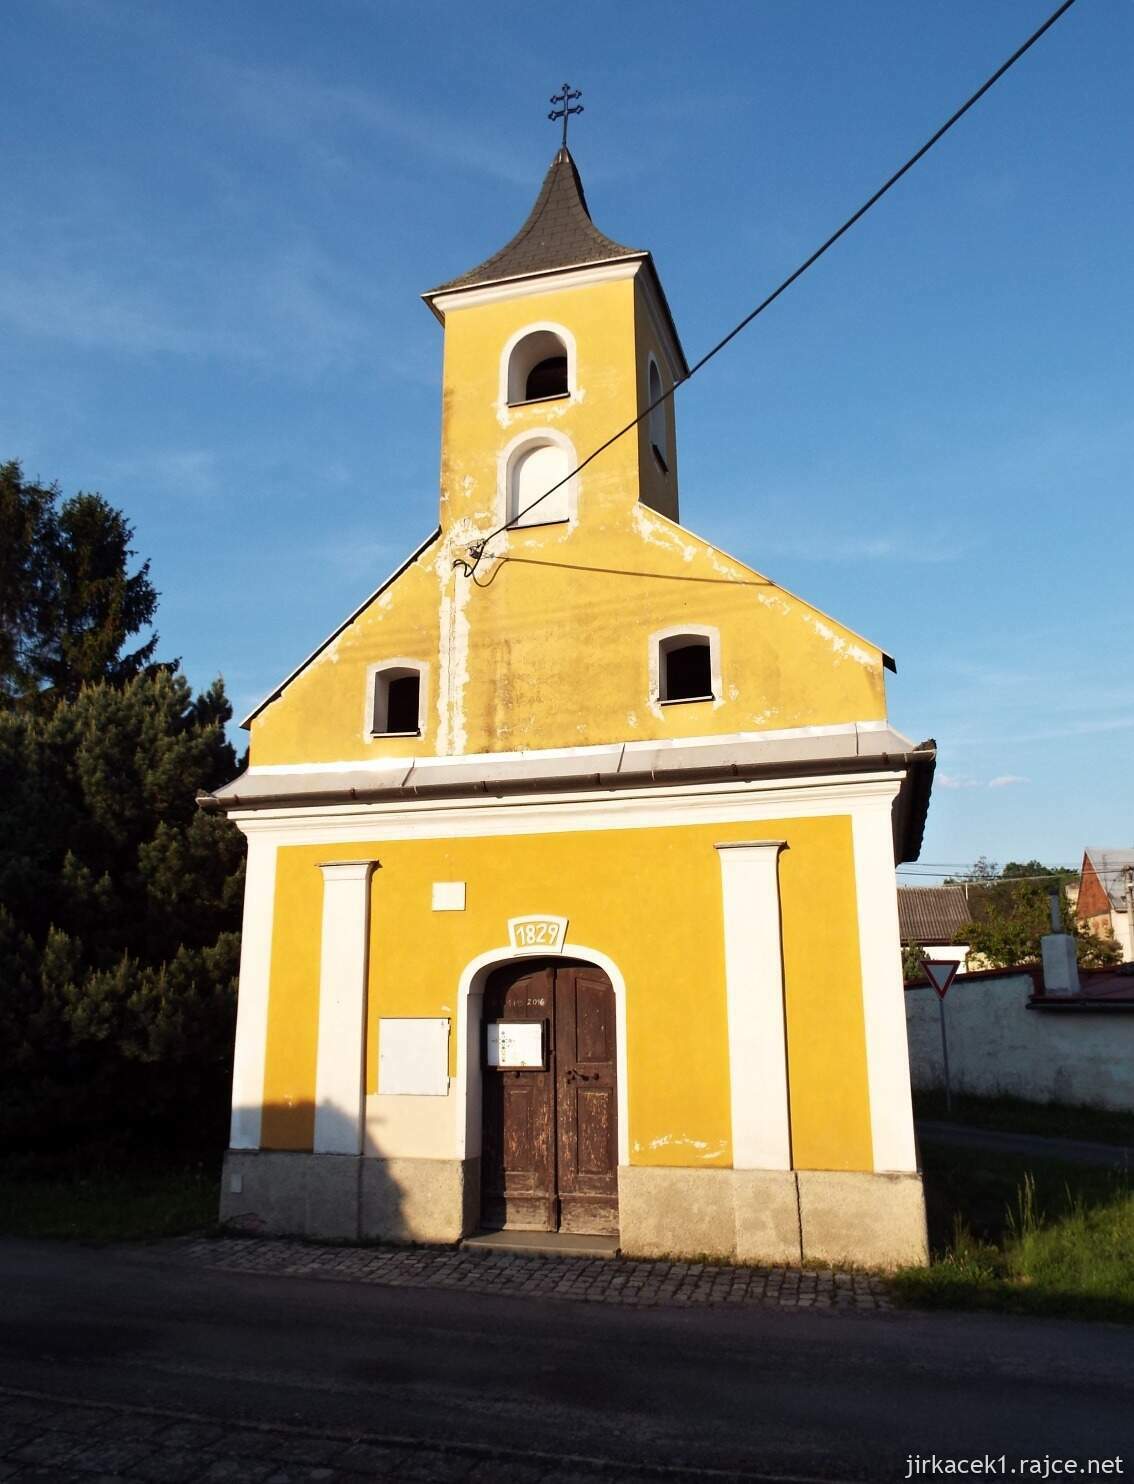 D - Stádlo - Kaplička sv. Floriána 04